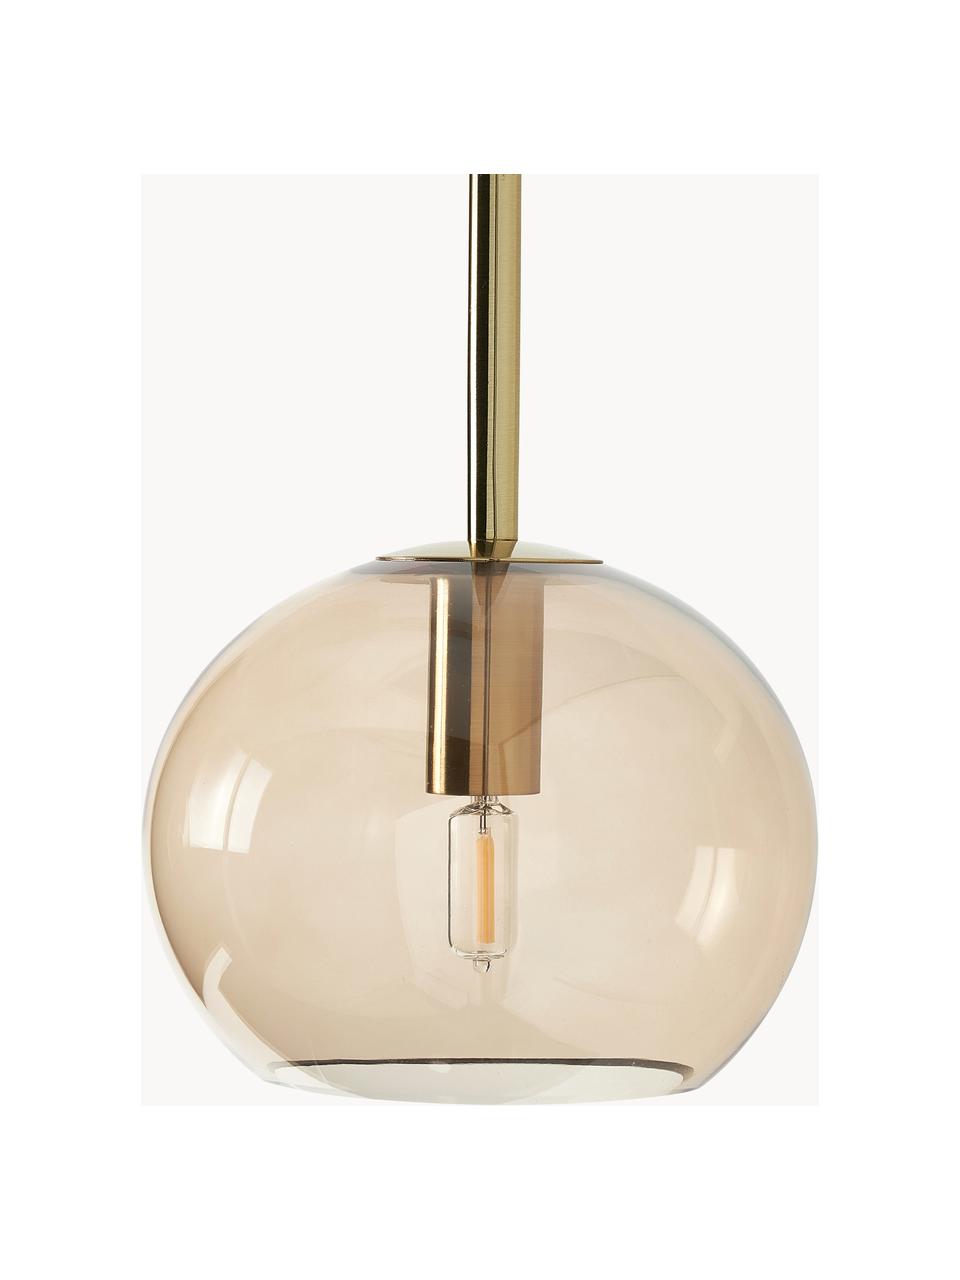 Grote hanglamp met glazen bollen Raquel, Beige, transparant, B 115 x H 150 cm